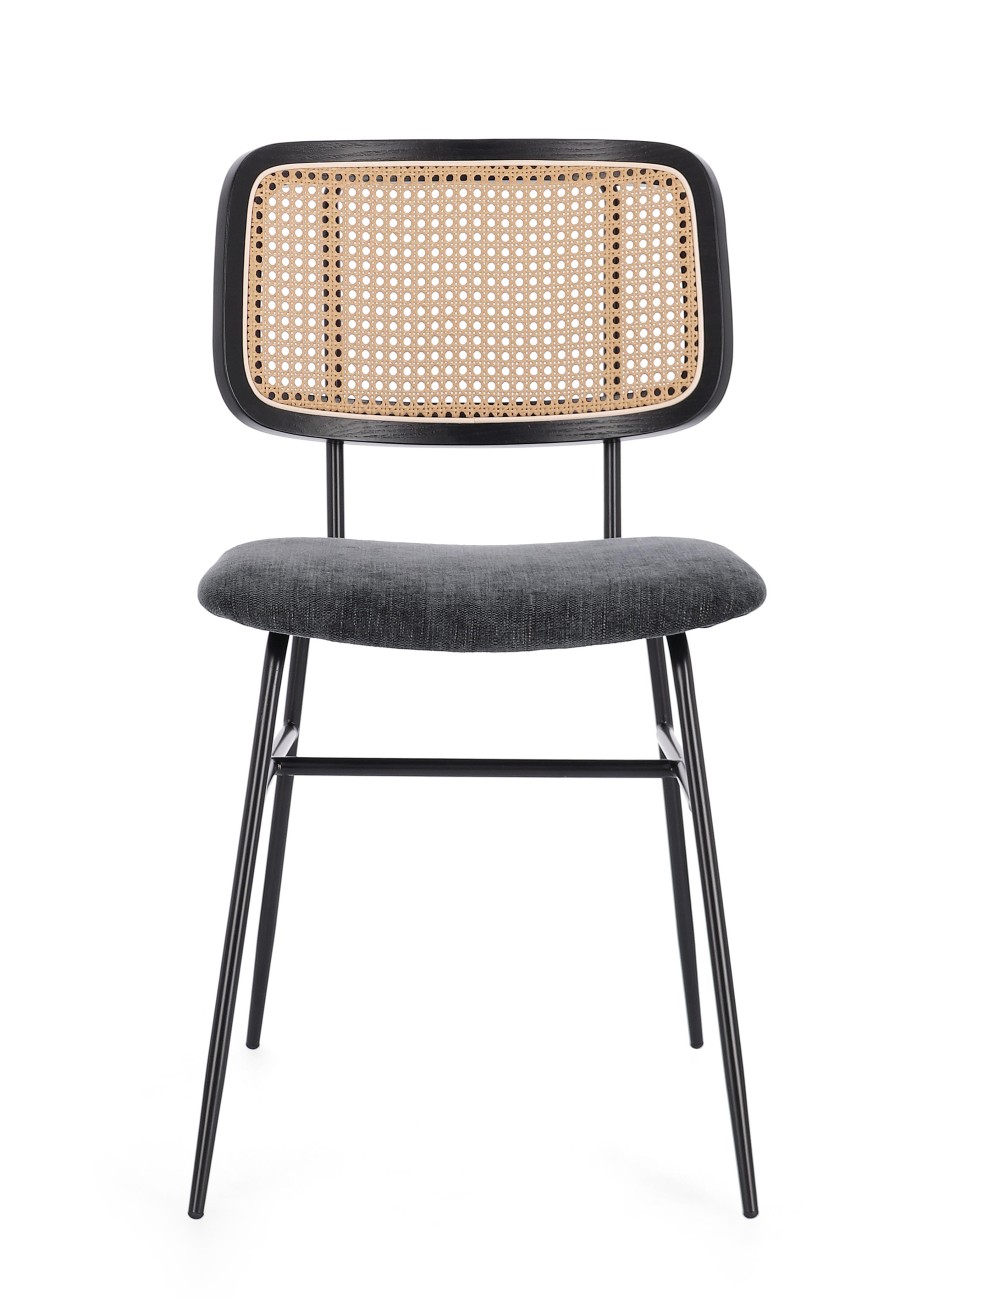 Der Esszimmerstuhl Glenna überzeugt mit seinem modernen Stil. Gefertigt wurde er aus Stoff, welcher einen dunkelgrauen Farbton besitzt. Das Gestell ist aus Metall und hat eine schwarze Farbe. Der Stuhl besitzt eine Sitzhöhe von 48 cm.